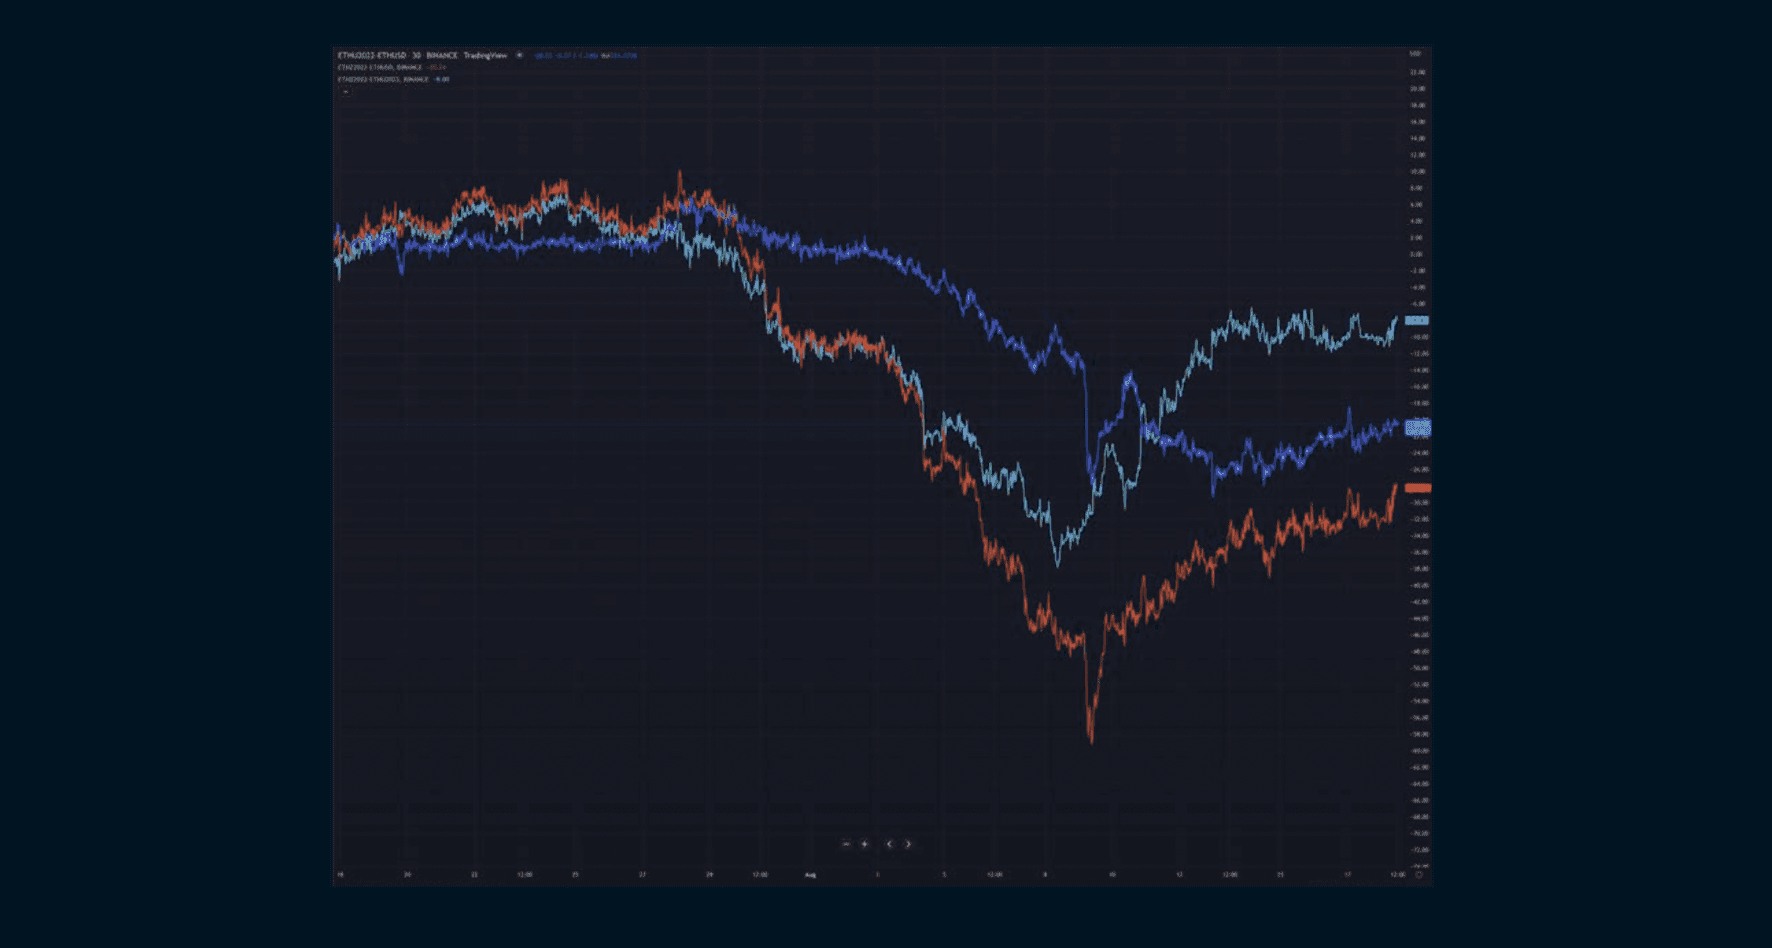 Red Graph: December-spot Blue Graph: September-spot Teal Graph: December-September